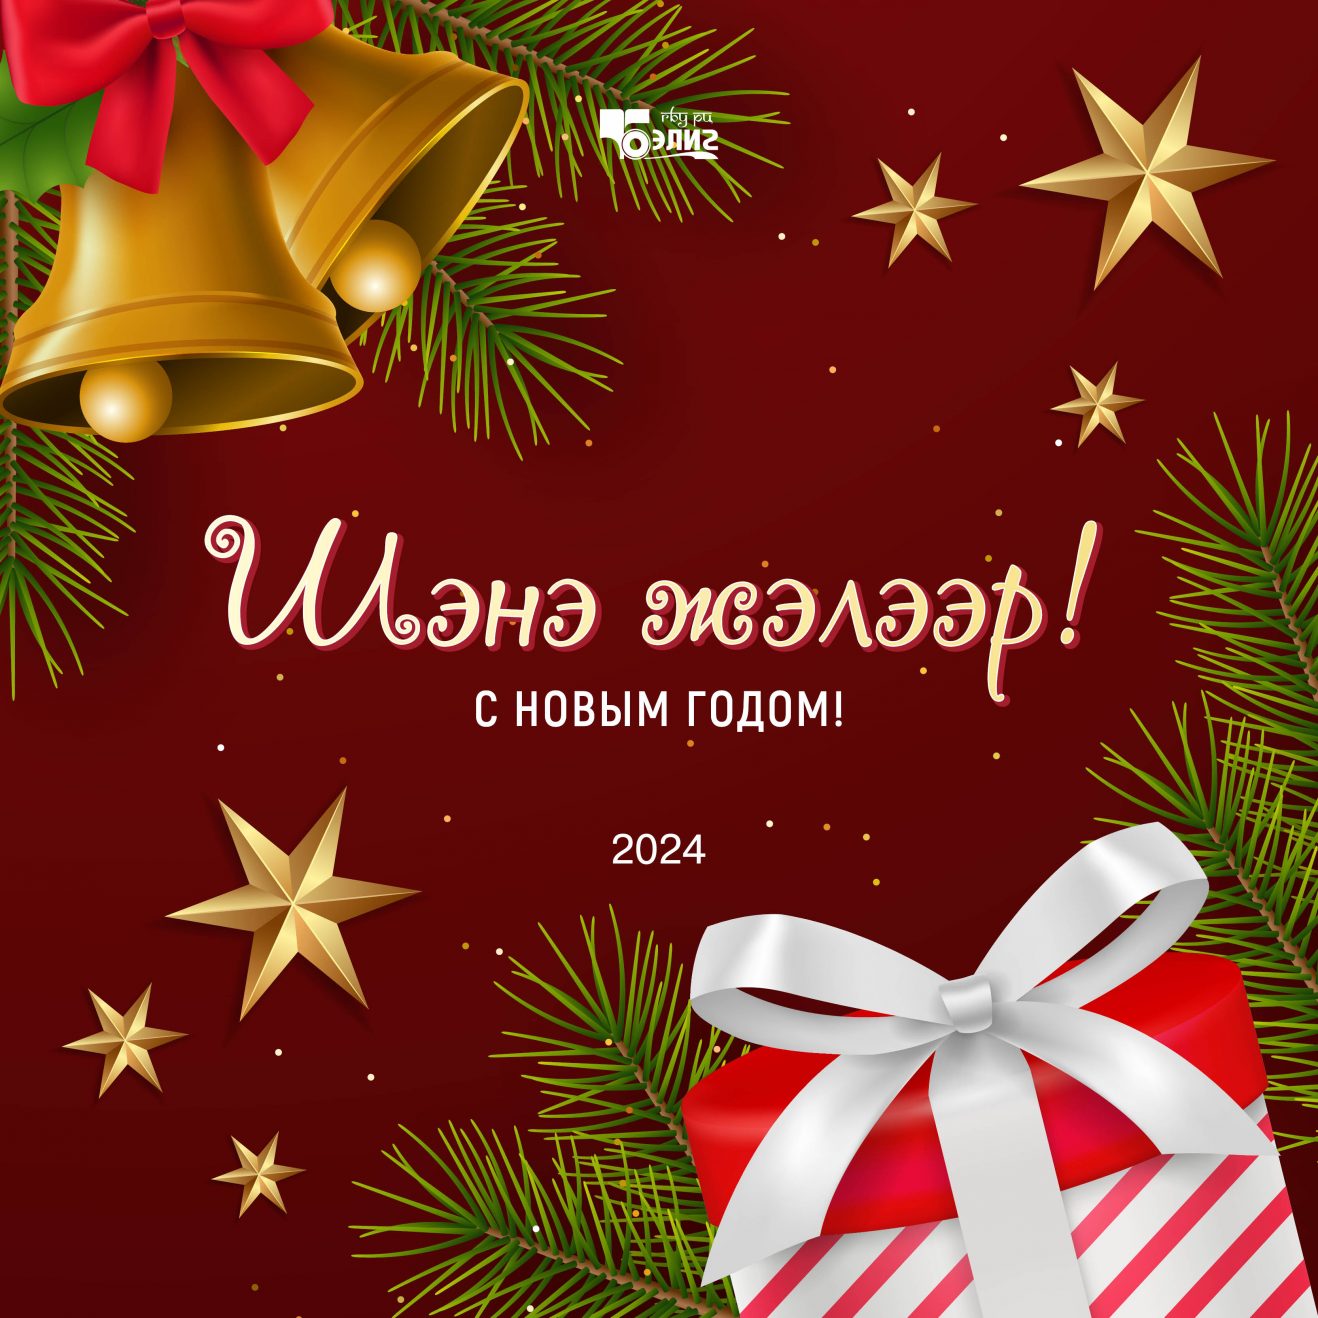 Электронные открытки «Бэлига» — к Новому году